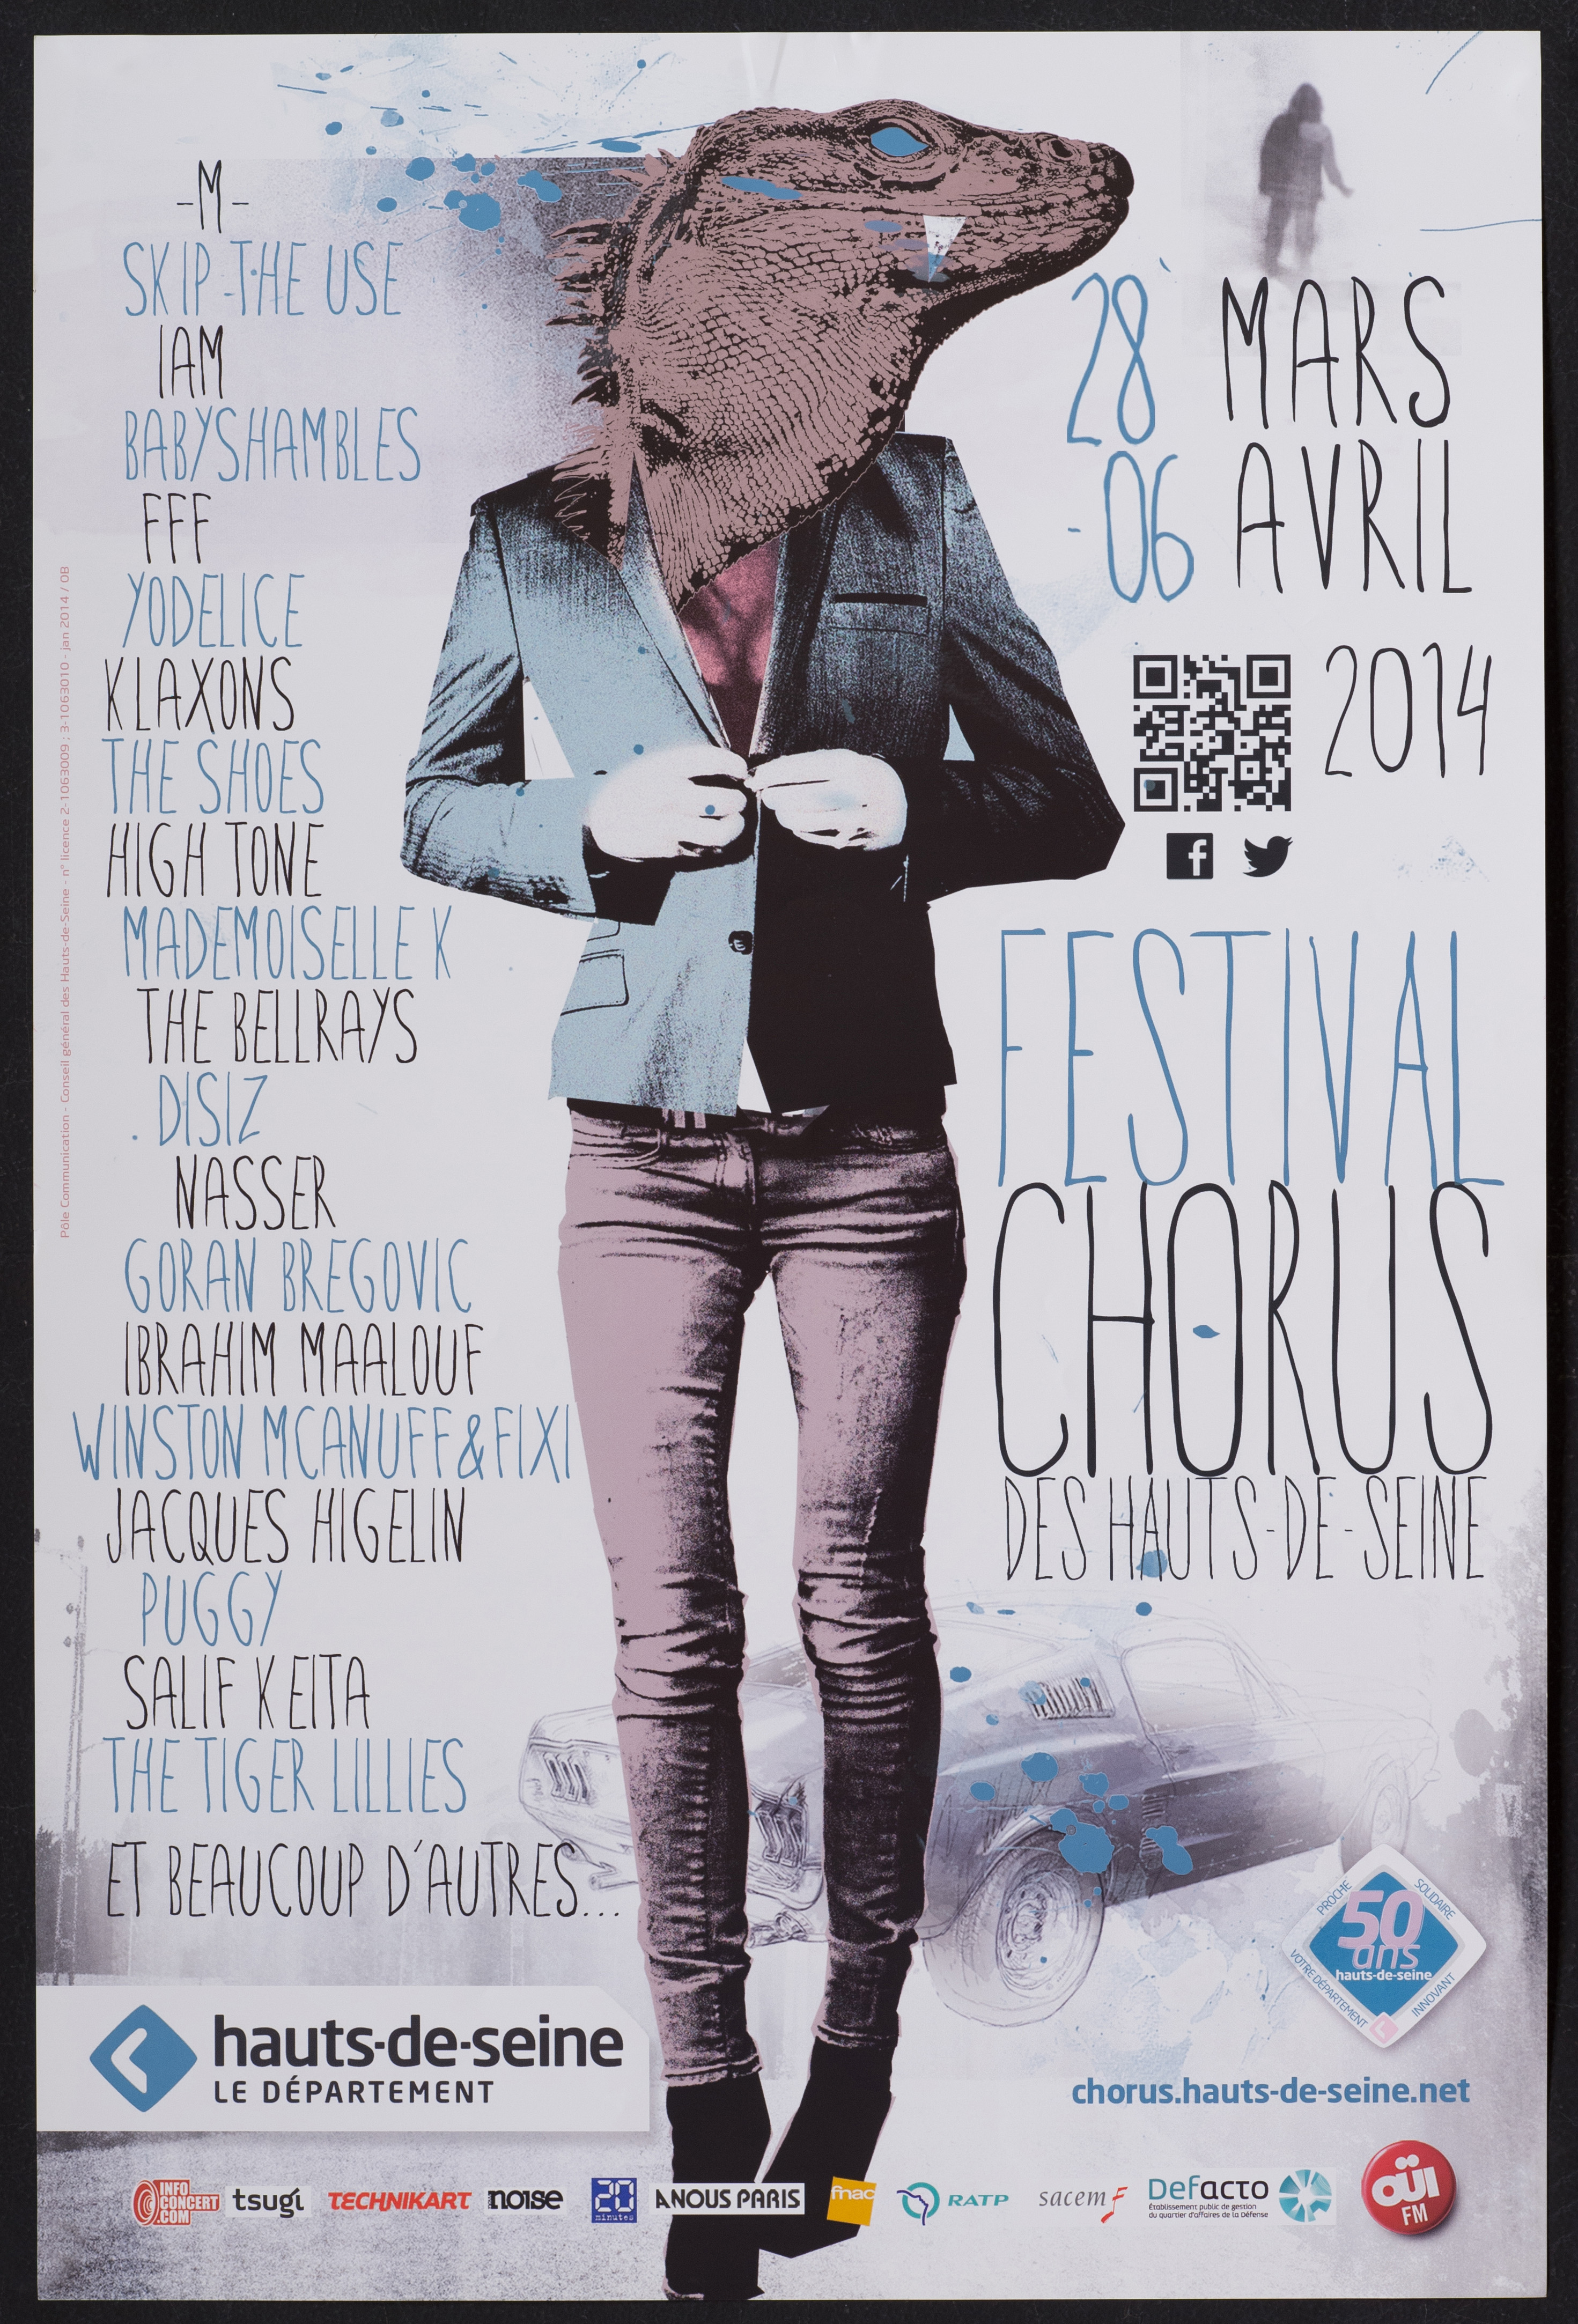 Festival chorus des Hauts-de-Seine 28 mars-6 avril 2014. [liste des artistes ...]. - CG 92, 2014. - 1 affiche ill. coul., 60 x 40 cm.